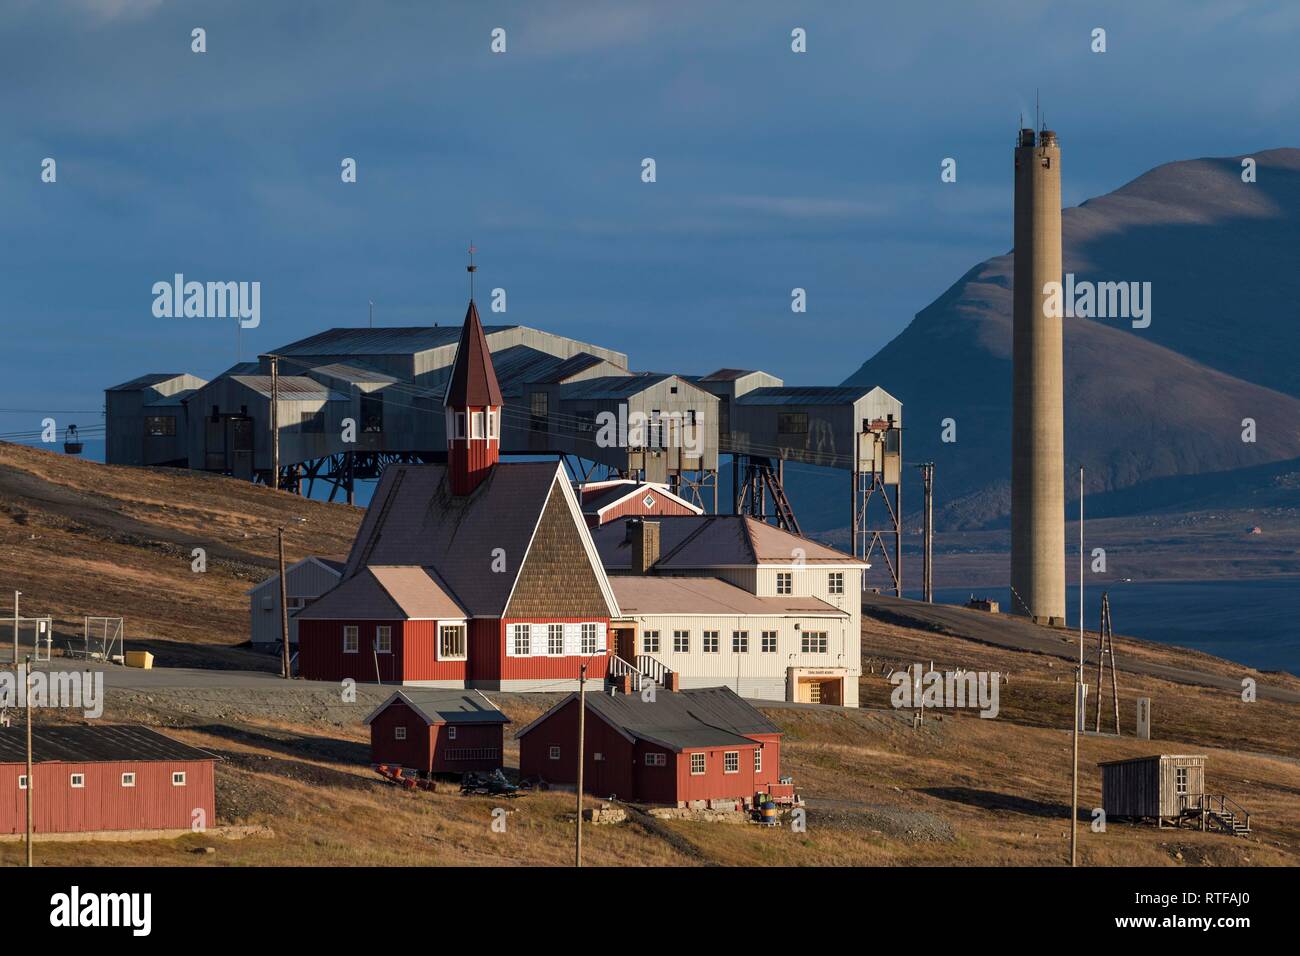 Più settentrionale della Chiesa nel mondo, la Chiesa Svalbard Kirke davanti a un ex miniera di carbone e lo sfiato della centrale a energia termica Foto Stock